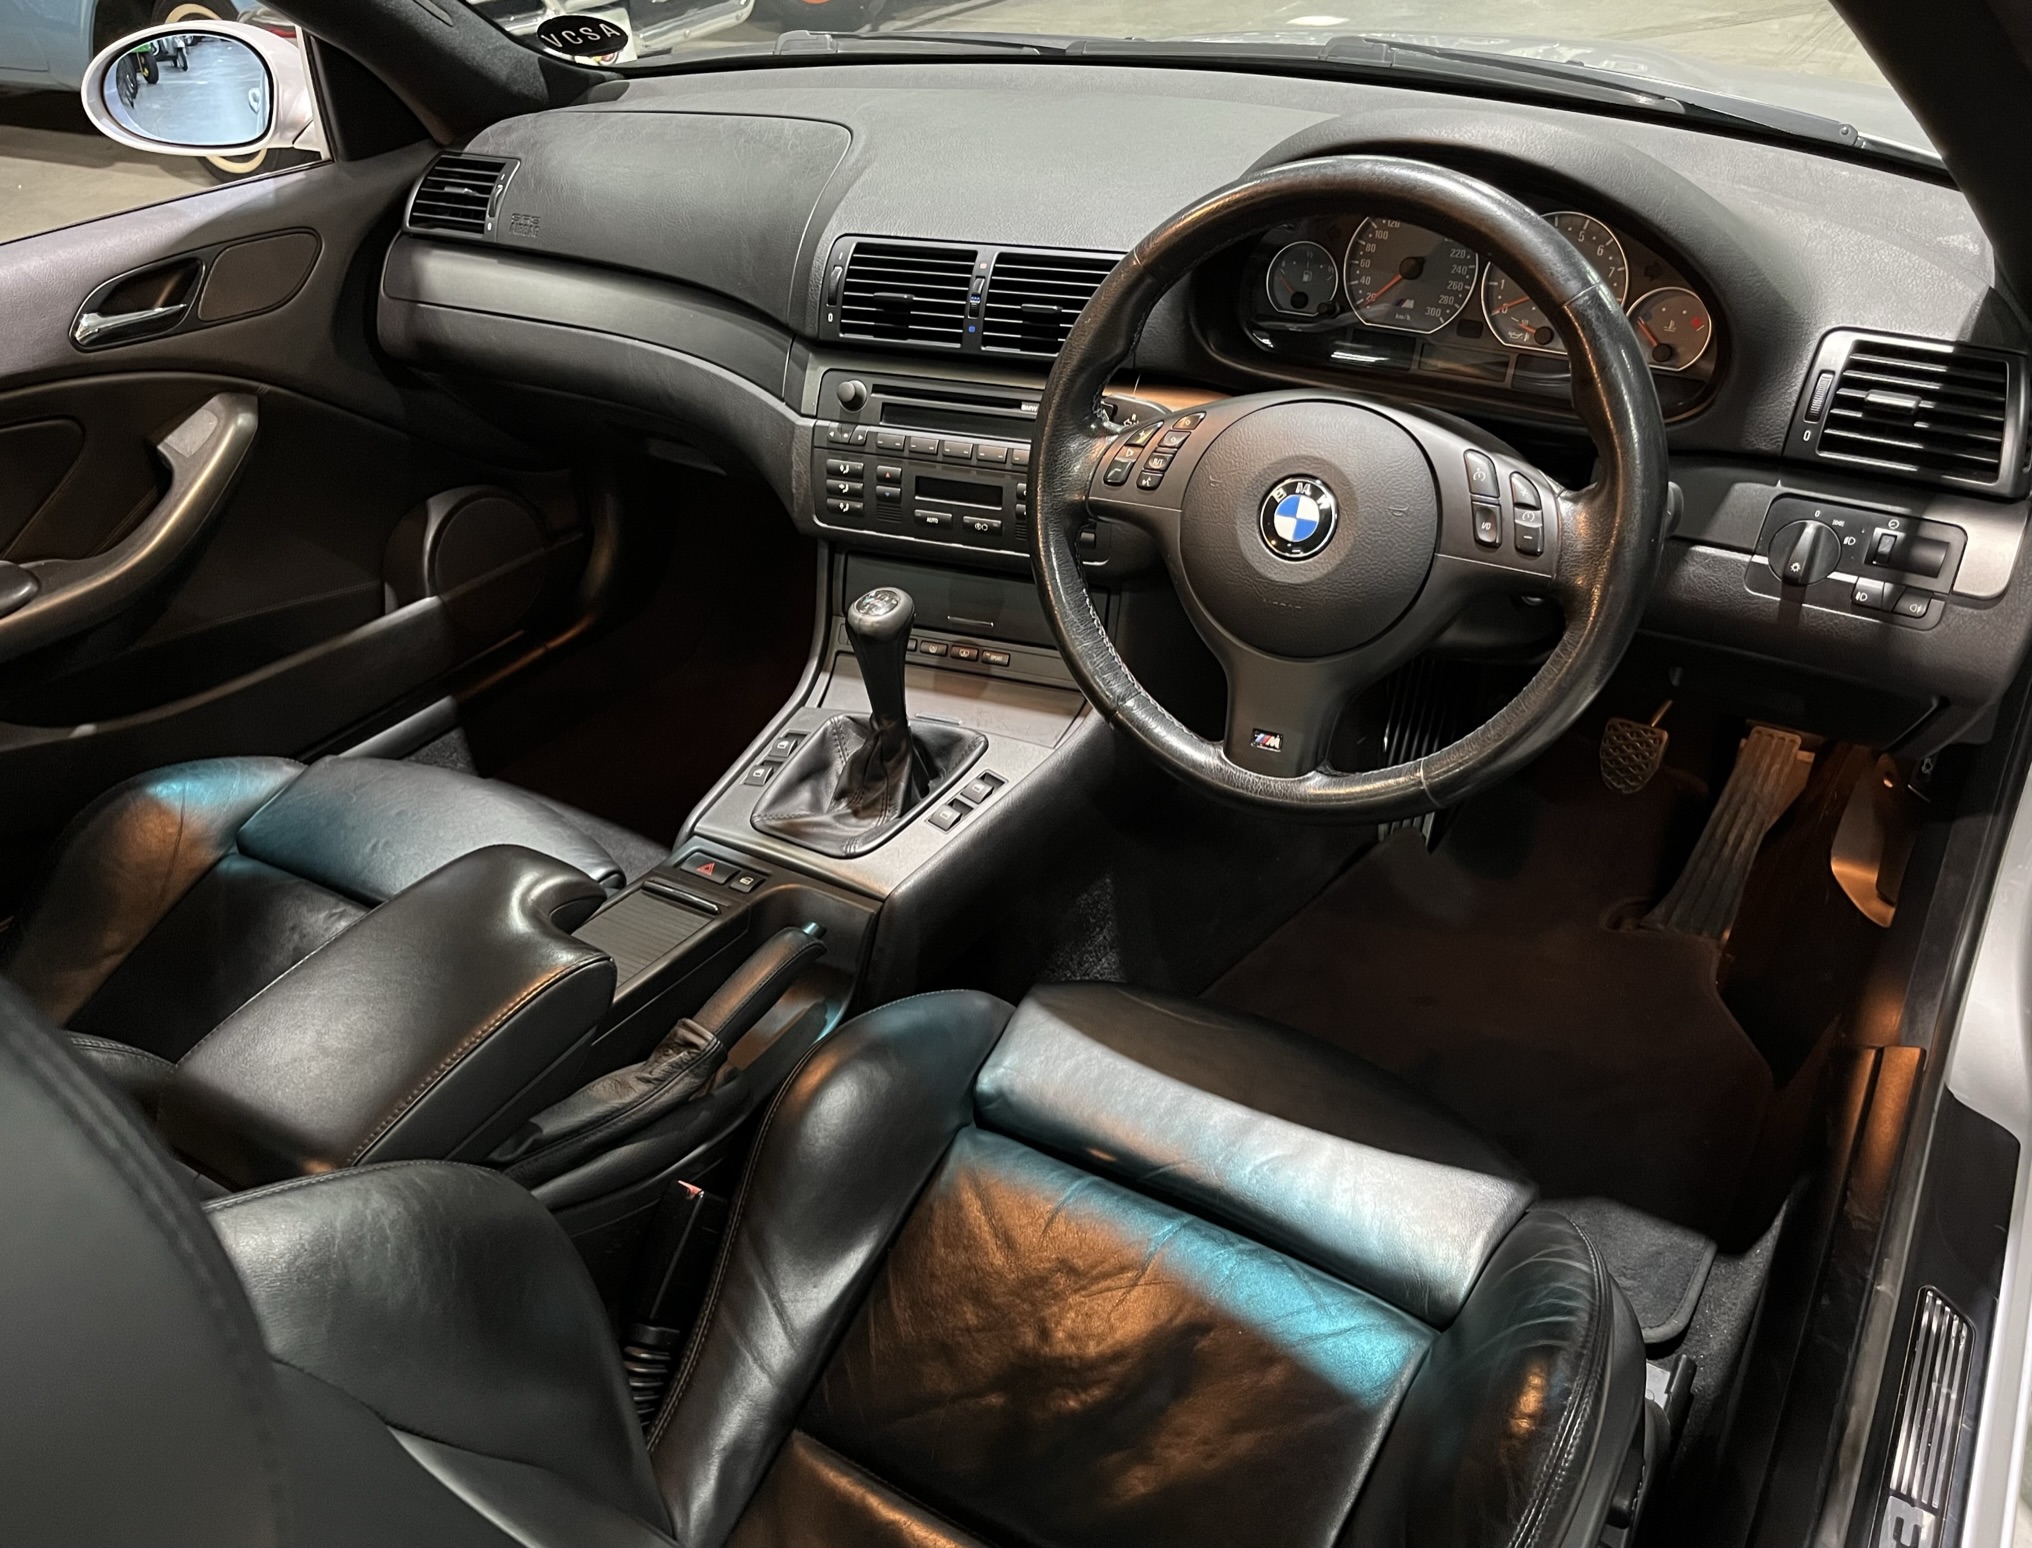 2005 BMW E46 M3 Manual